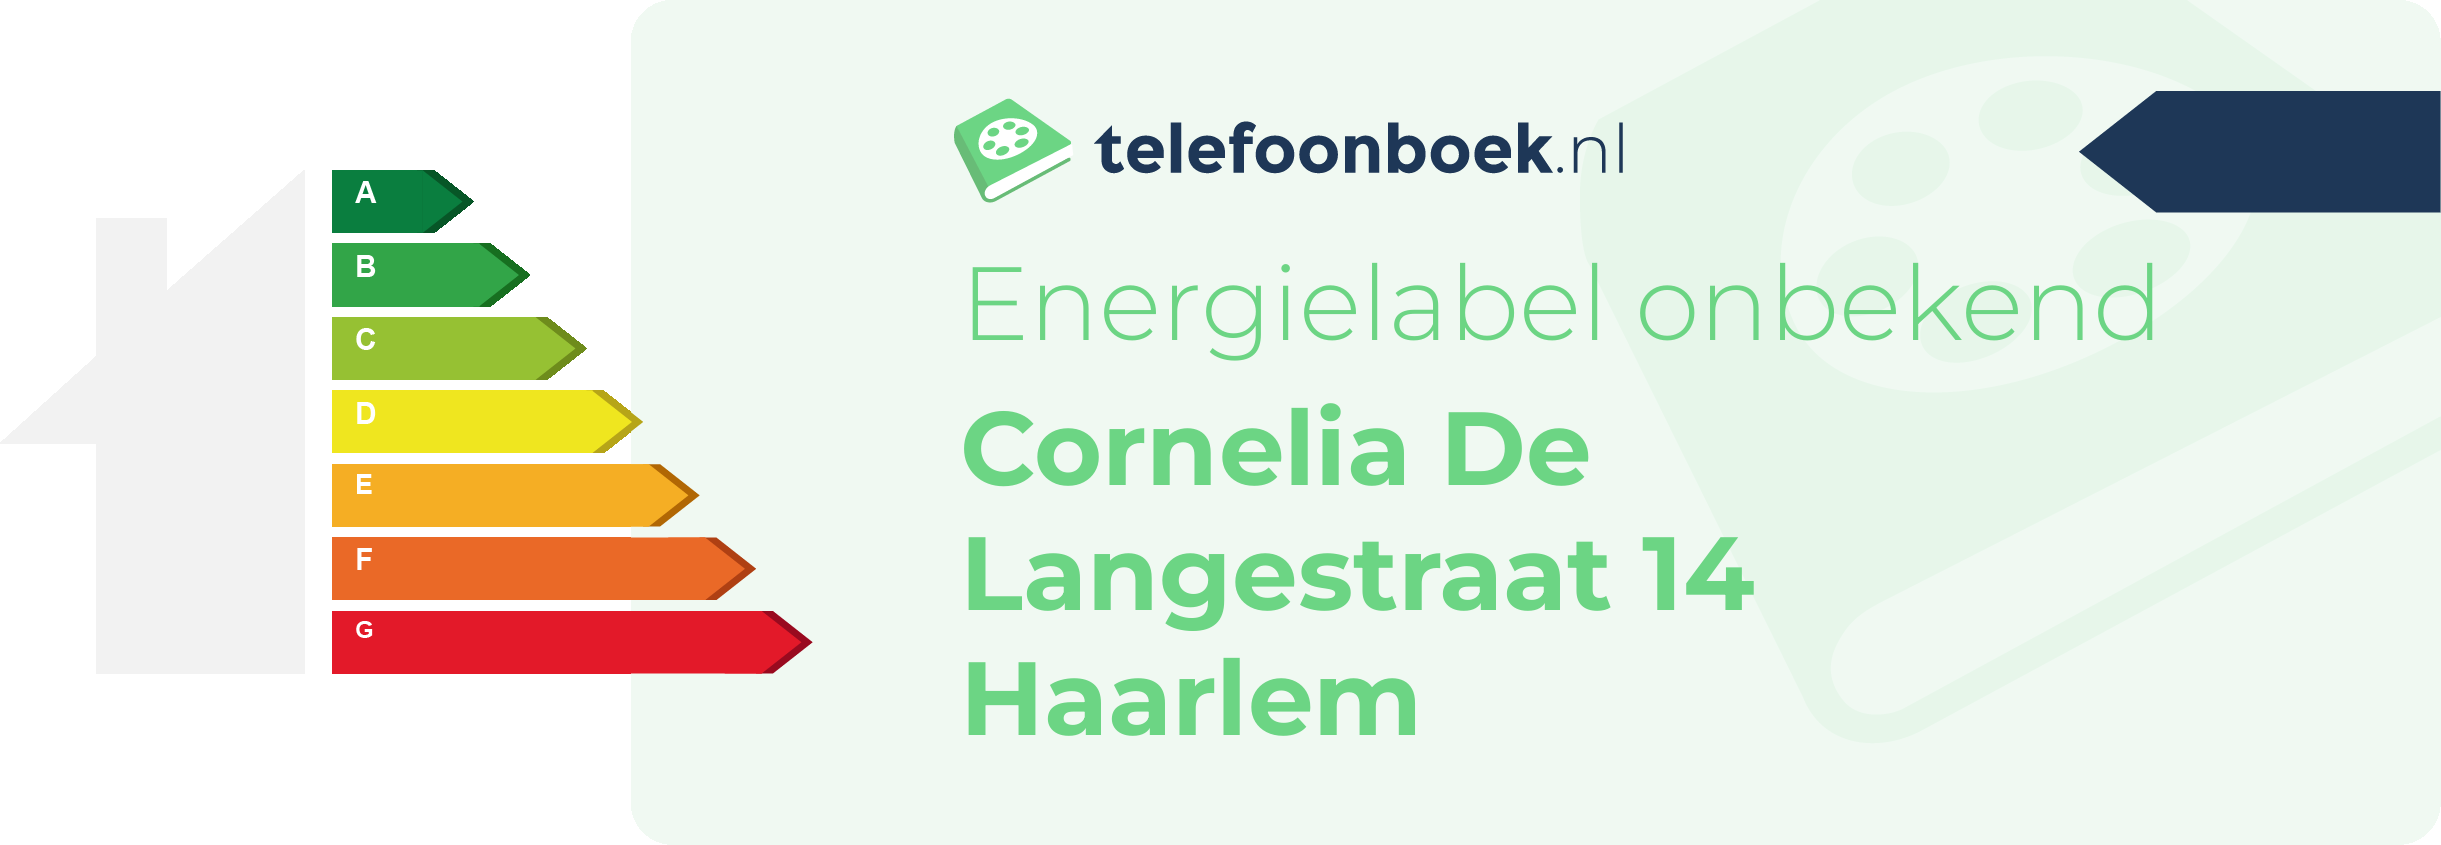 Energielabel Cornelia De Langestraat 14 Haarlem